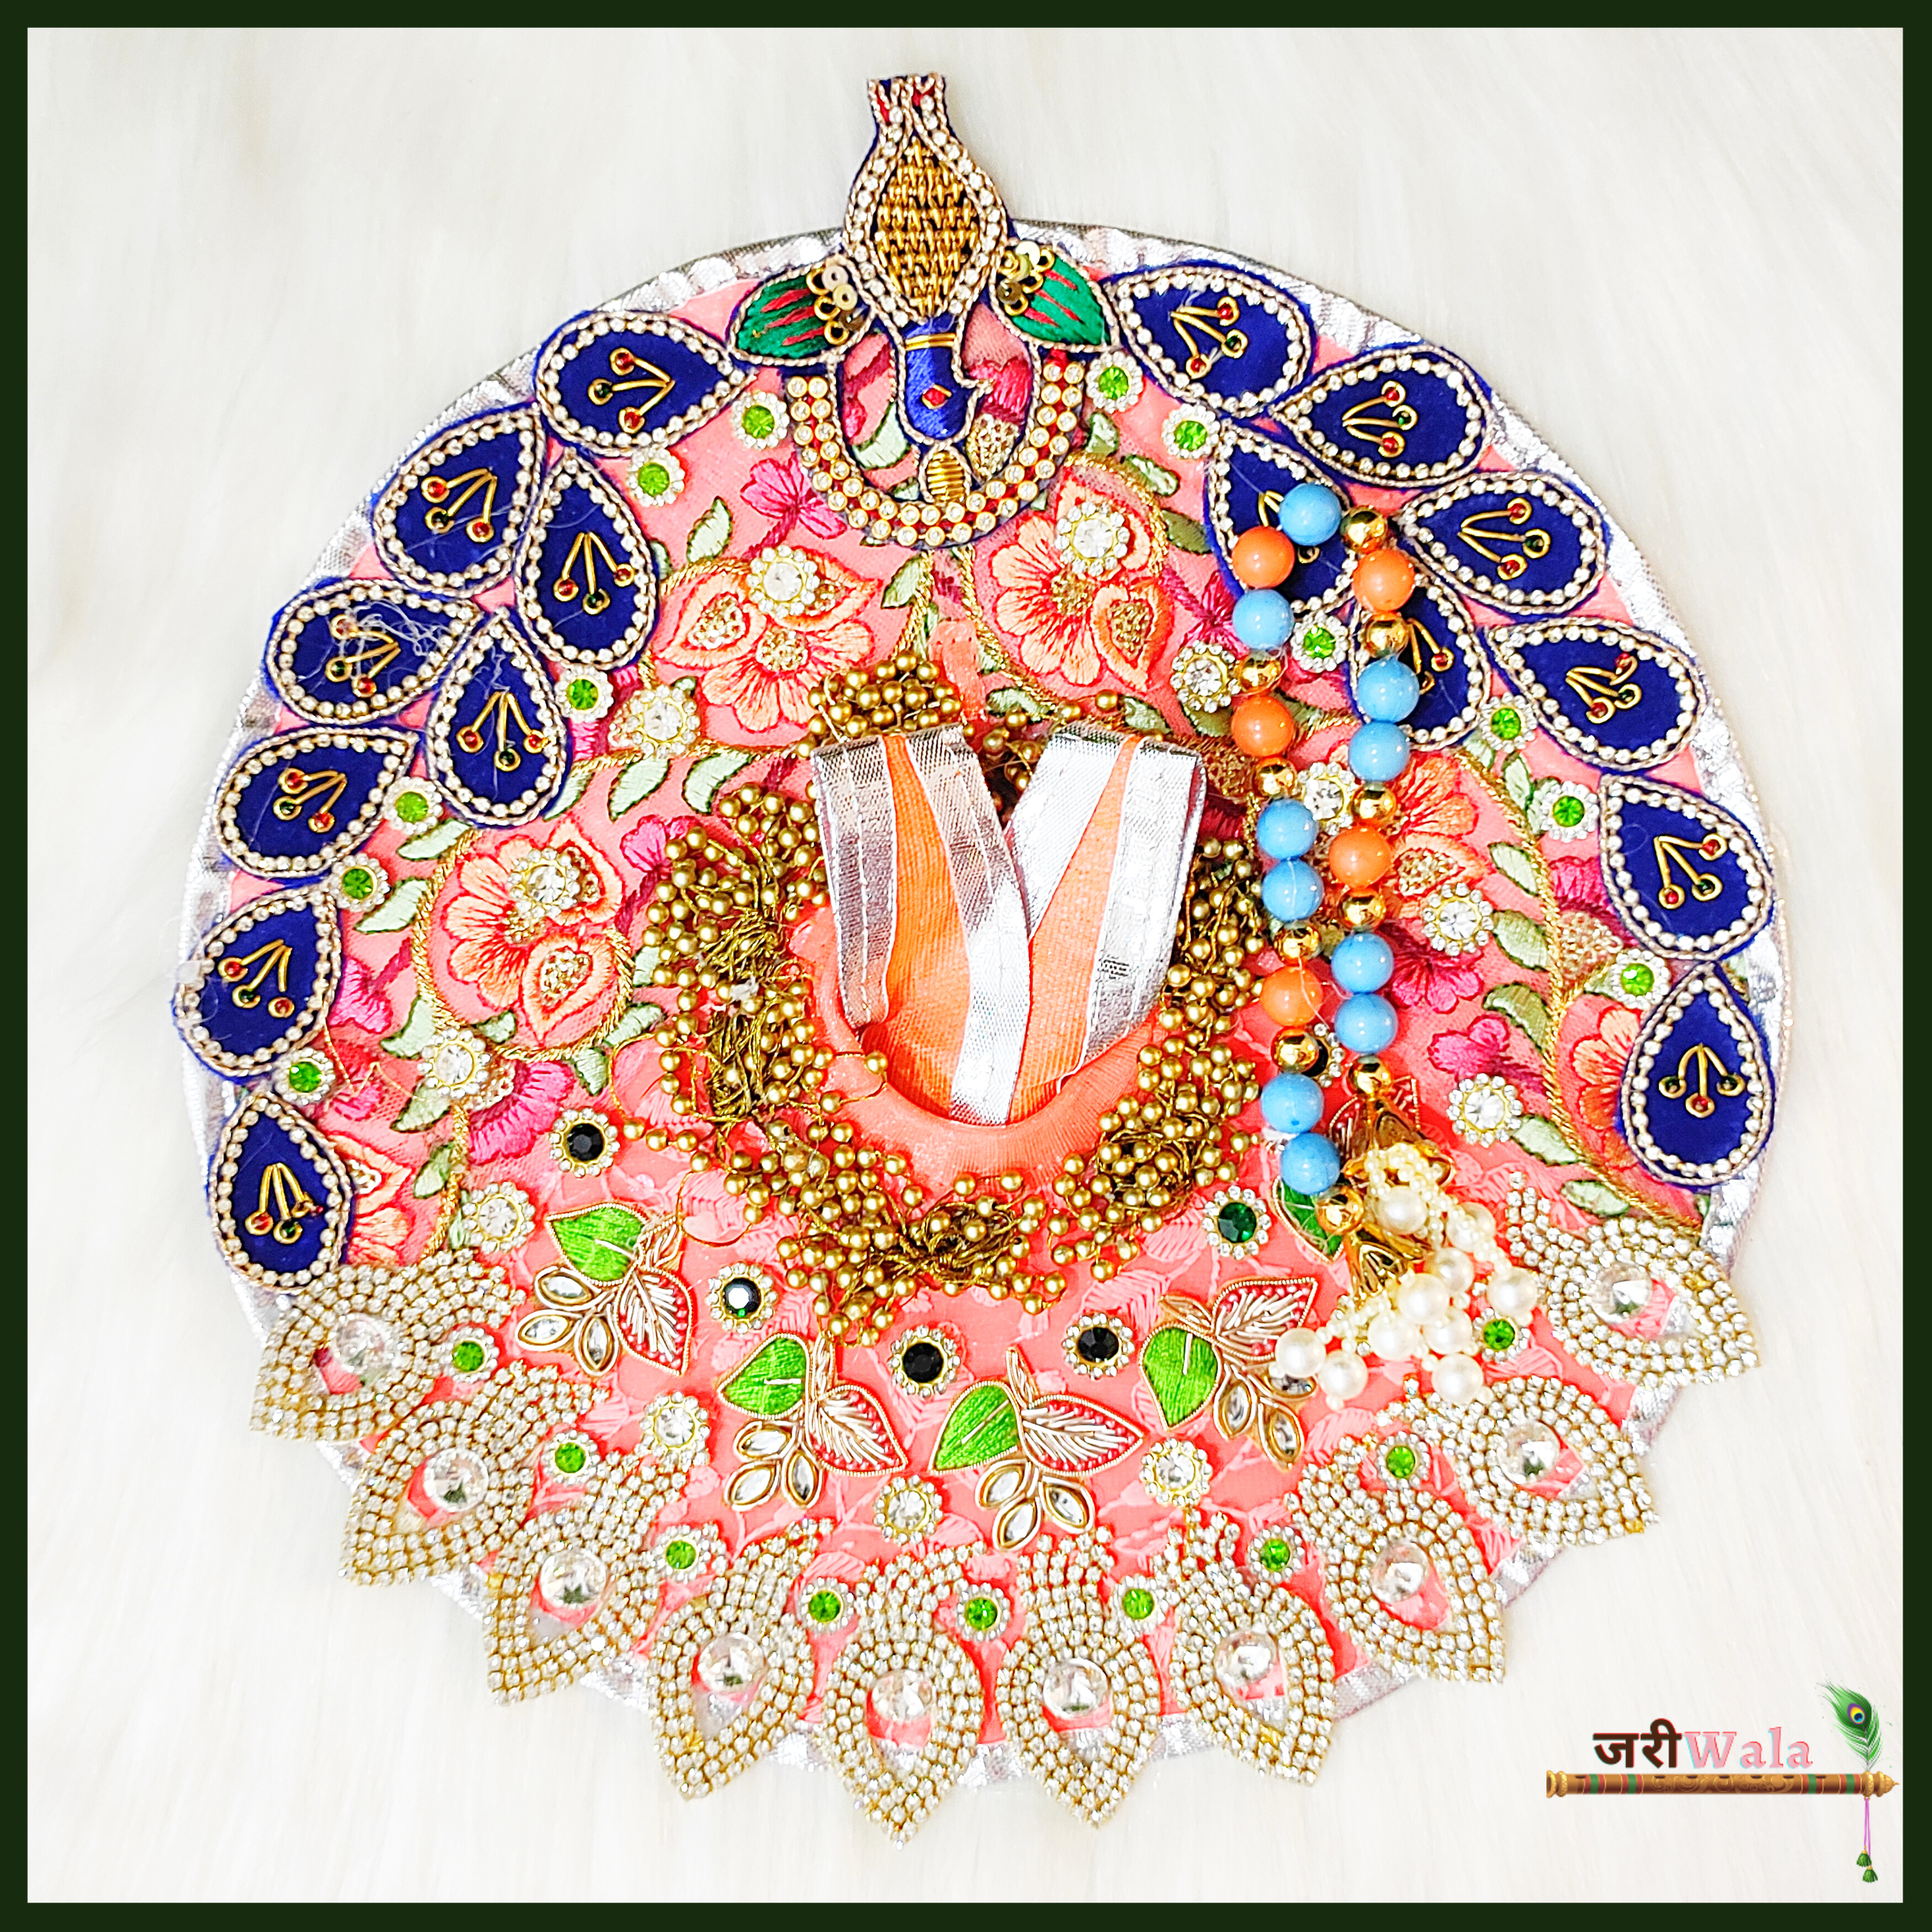 Buy Laddu Gopal Ji Dresses Online in India | Satvikstore.in – satvikstore.in